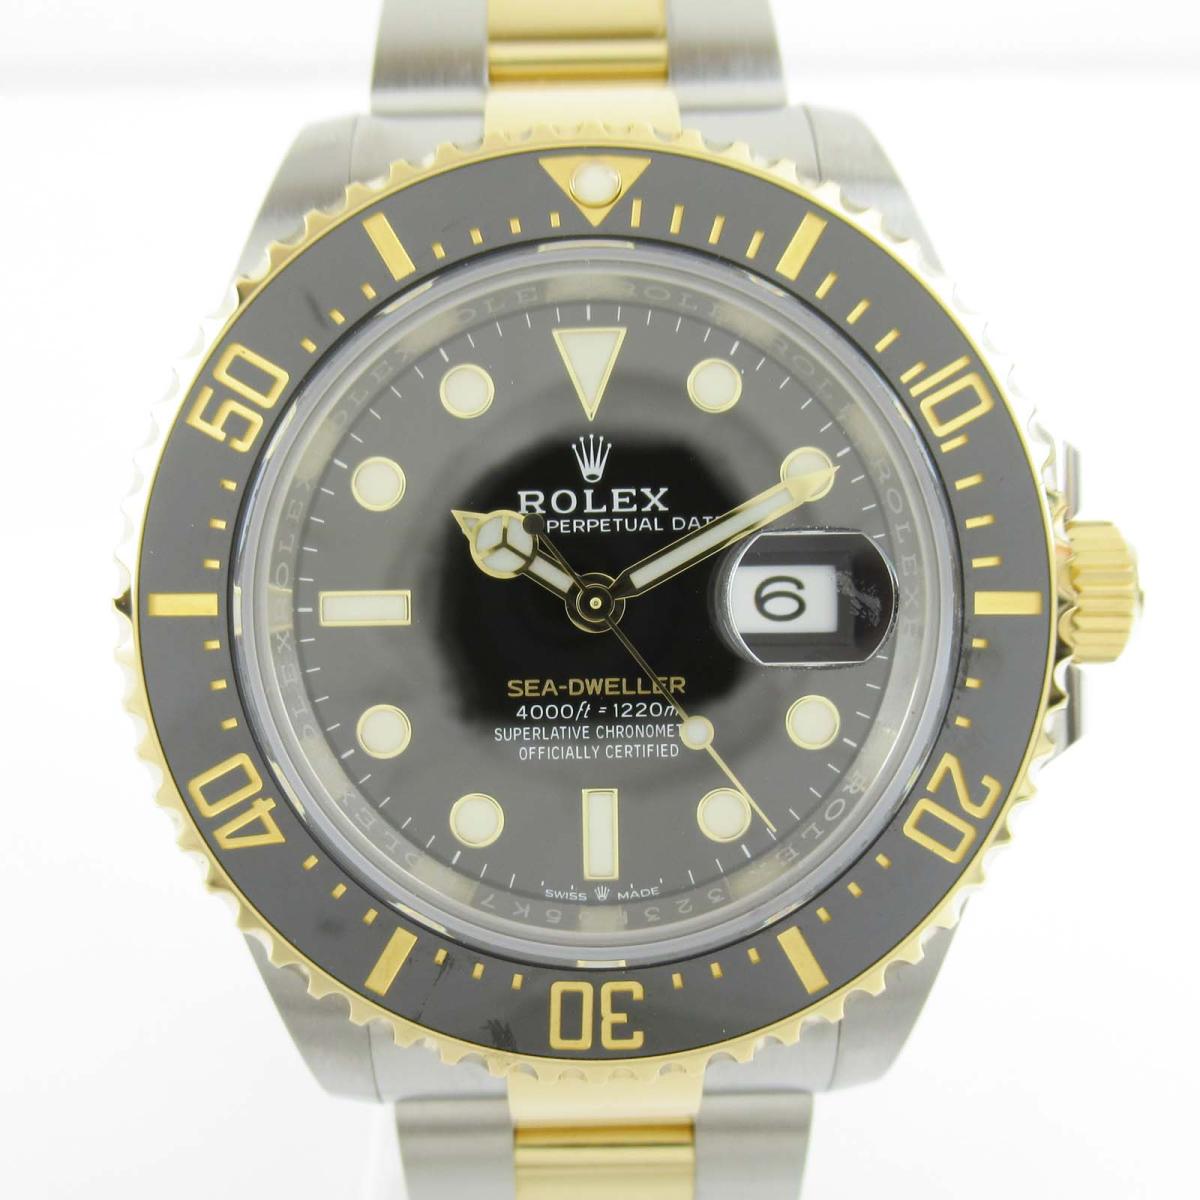 ロレックス シードゥエラー ウォッチ 腕時計 時計 メンズ K18YG (750) イエローゴールド x ステンレススチール (SS) (126603) 【中古】 | ROLEX BRANDOFF ブランドオフ ブランド ブランド時計 ブランド腕時計